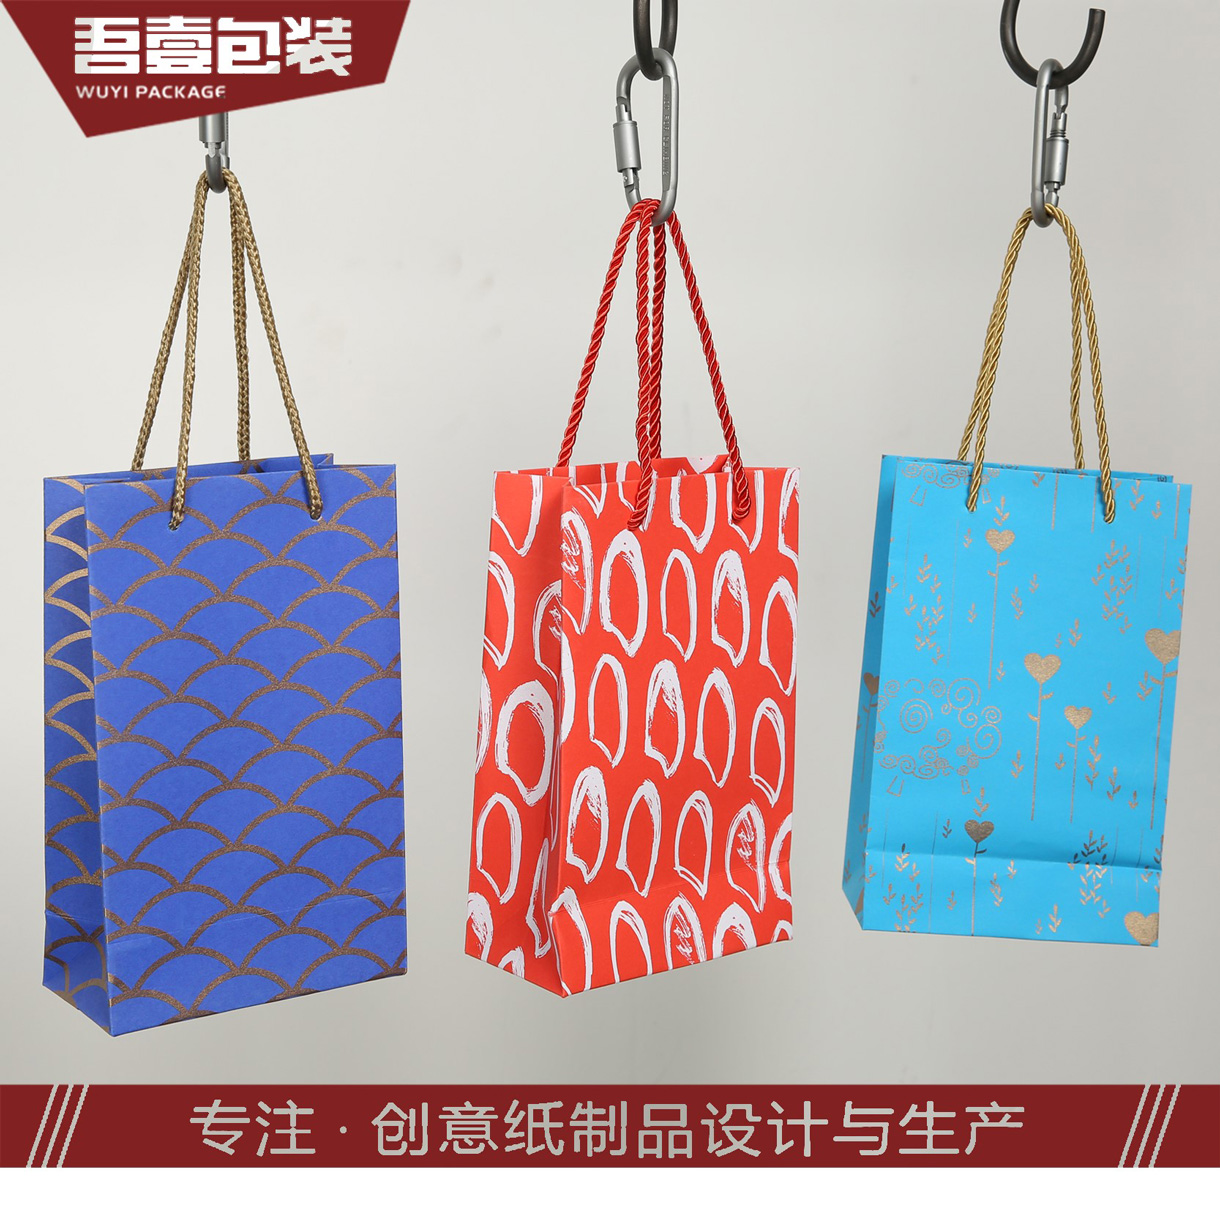 苏州吾壹包装彩印有限公司-中国上海国际包装展展览会